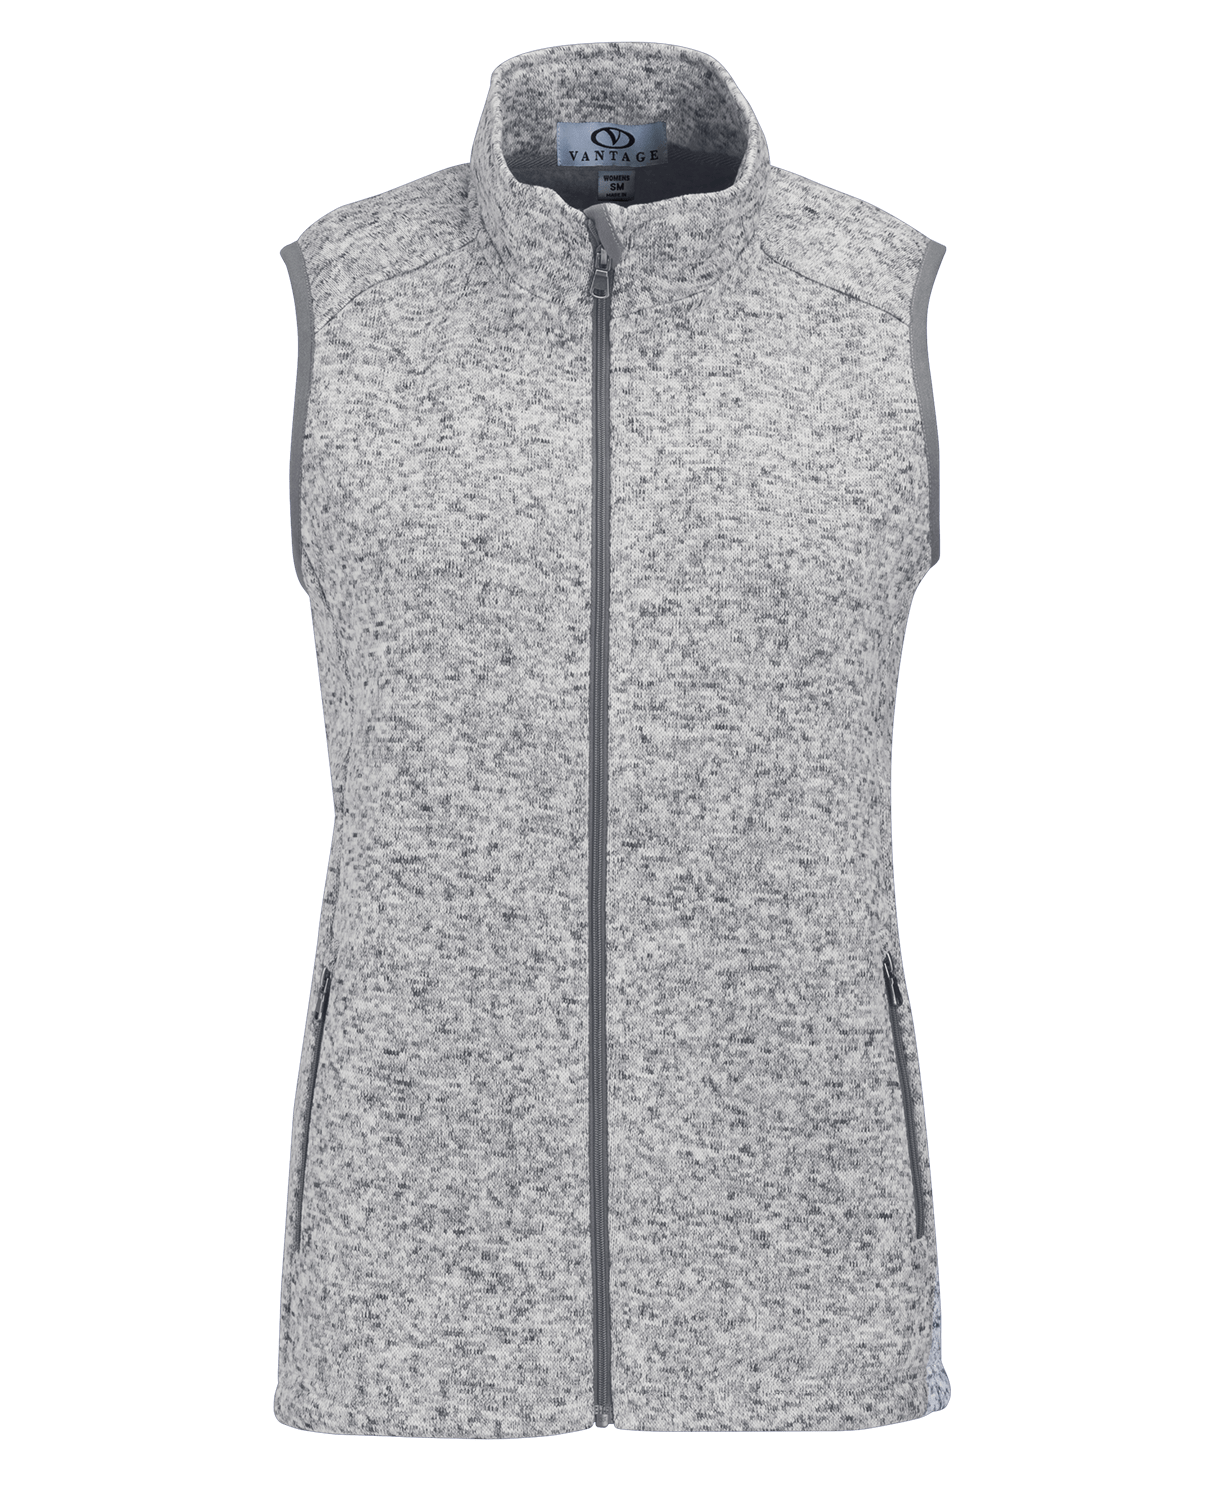 Vantage Fleece XS / Iceberg Vantage - Women's Summit Sweater-Fleece Vest